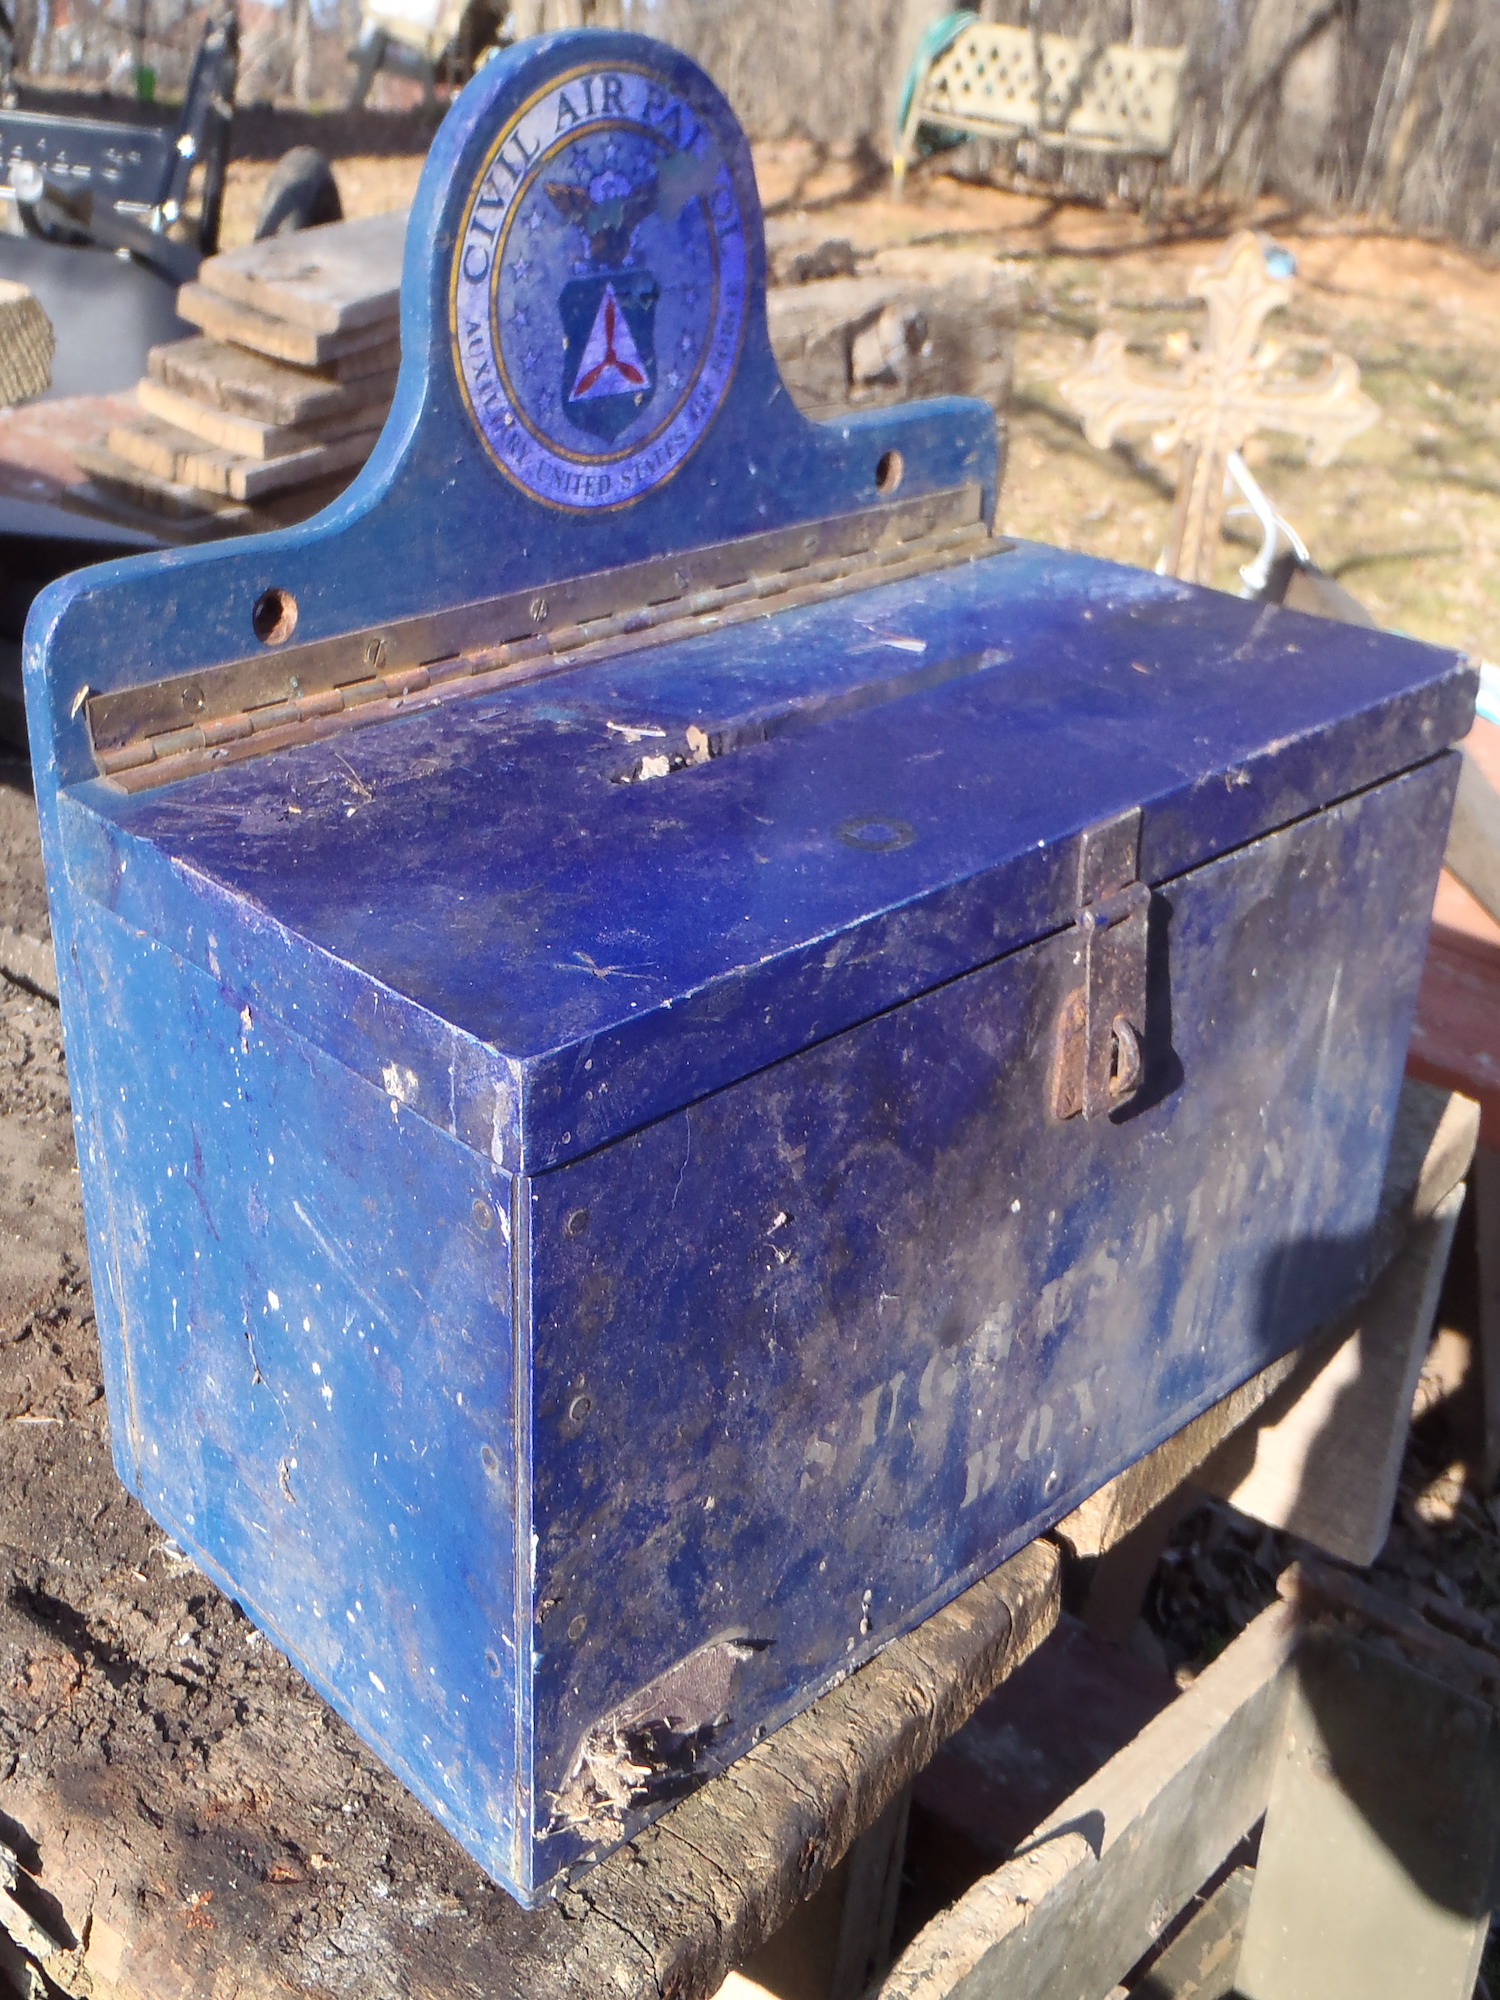 A blue civil air patrol box found at a barn